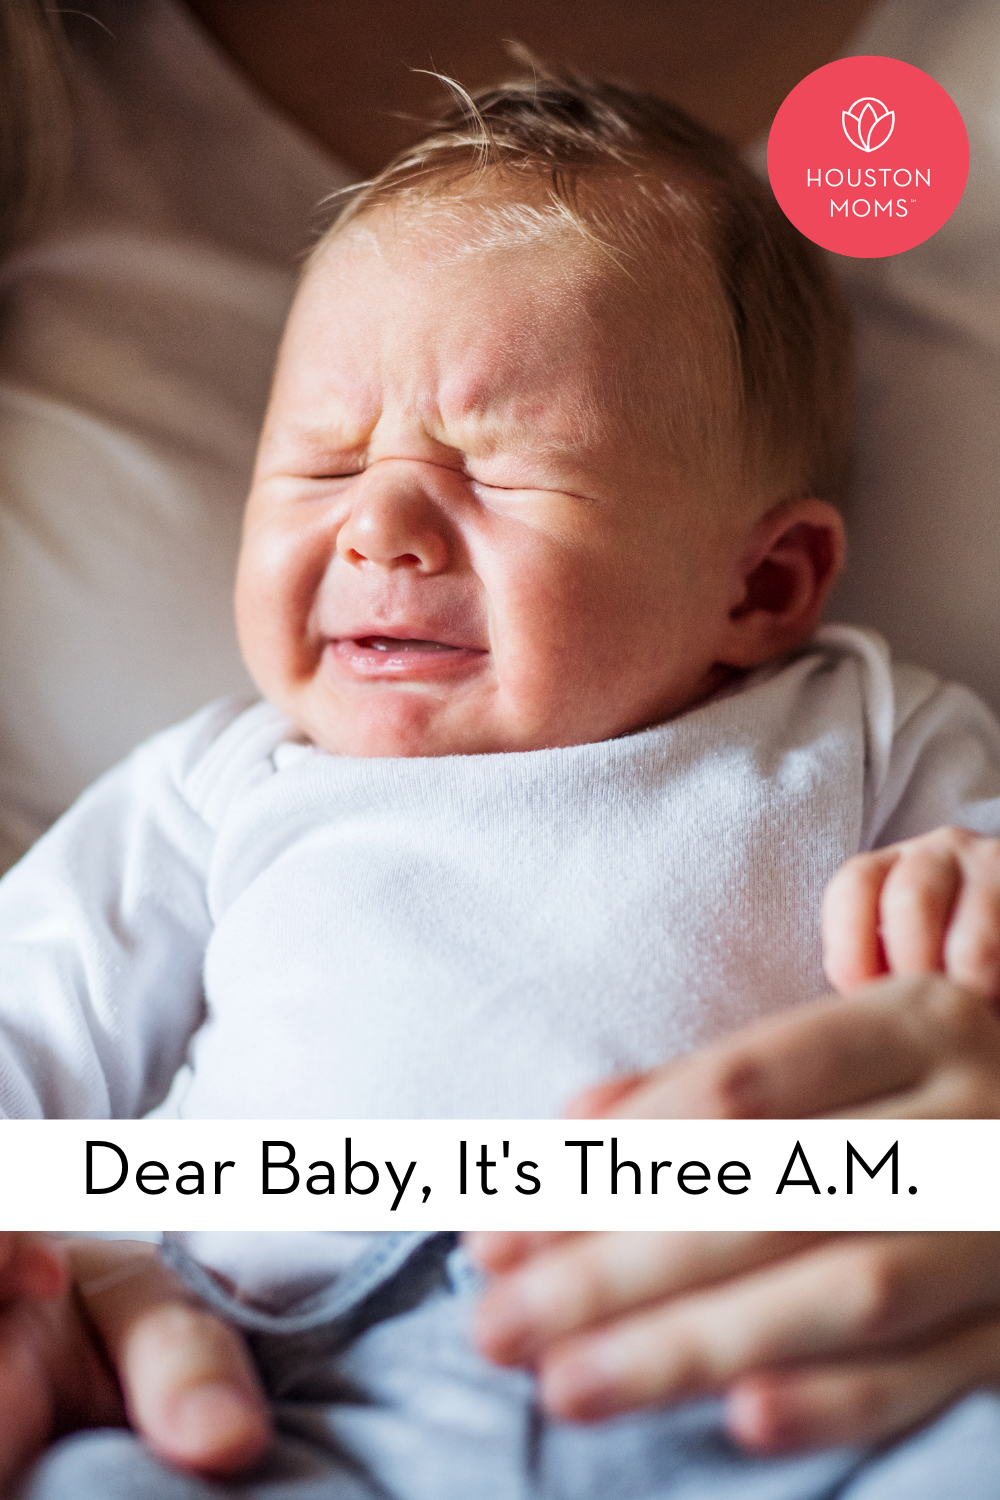 Houston Moms "Dear Baby, It's Three A.M." #houstonmoms #houstonmomsblog #momsaroundhouston